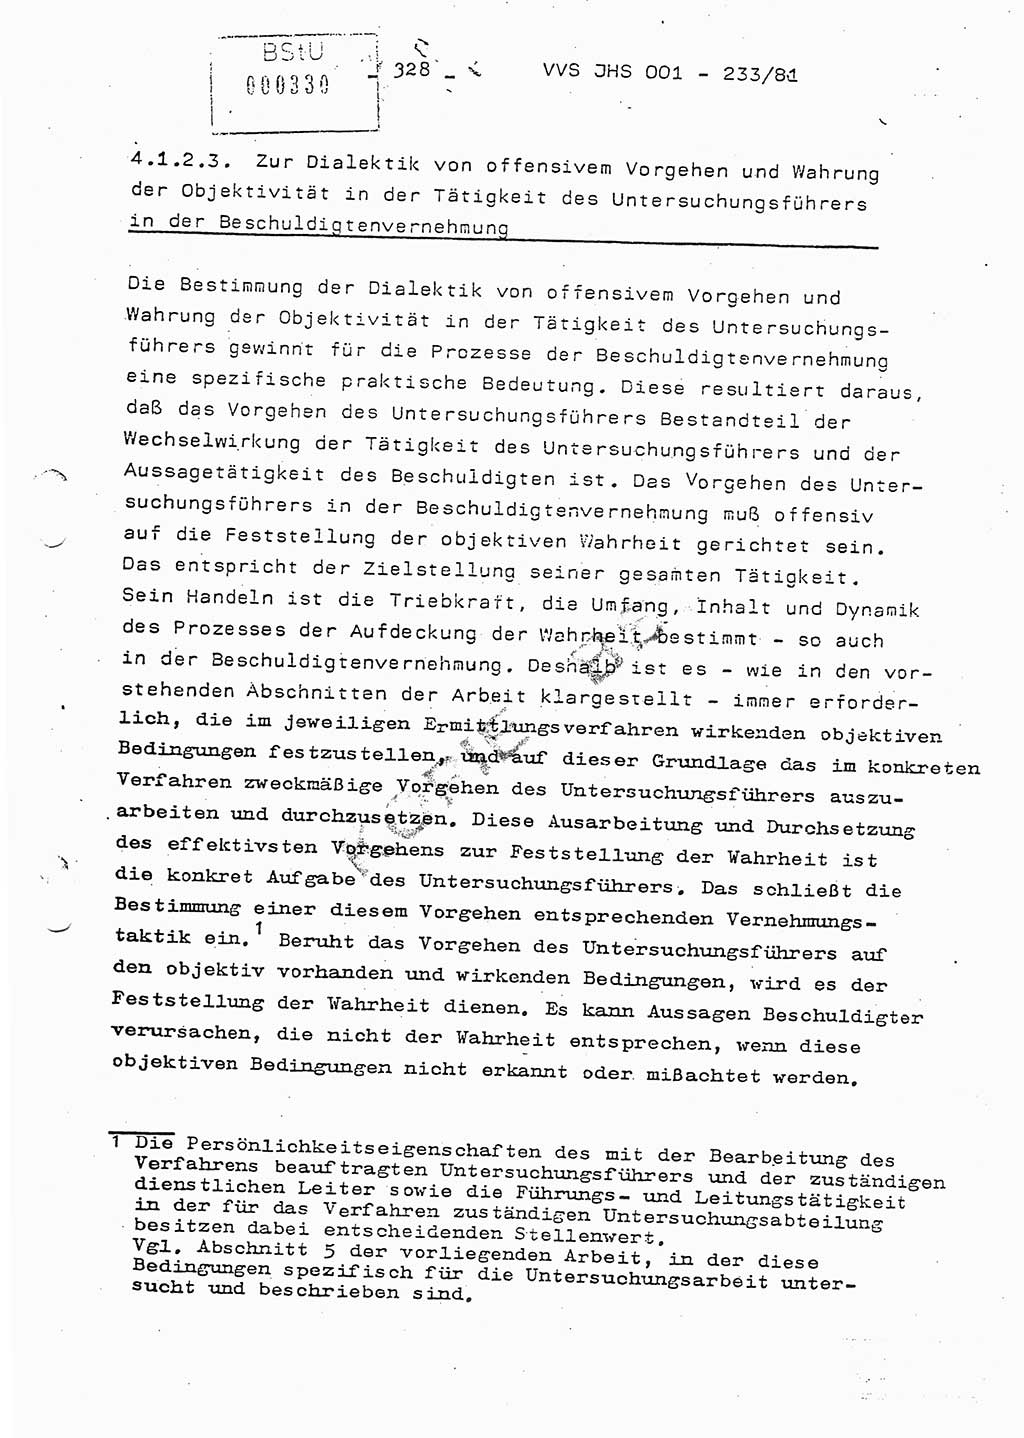 Dissertation Oberstleutnant Horst Zank (JHS), Oberstleutnant Dr. Karl-Heinz Knoblauch (JHS), Oberstleutnant Gustav-Adolf Kowalewski (HA Ⅸ), Oberstleutnant Wolfgang Plötner (HA Ⅸ), Ministerium für Staatssicherheit (MfS) [Deutsche Demokratische Republik (DDR)], Juristische Hochschule (JHS), Vertrauliche Verschlußsache (VVS) o001-233/81, Potsdam 1981, Blatt 328 (Diss. MfS DDR JHS VVS o001-233/81 1981, Bl. 328)